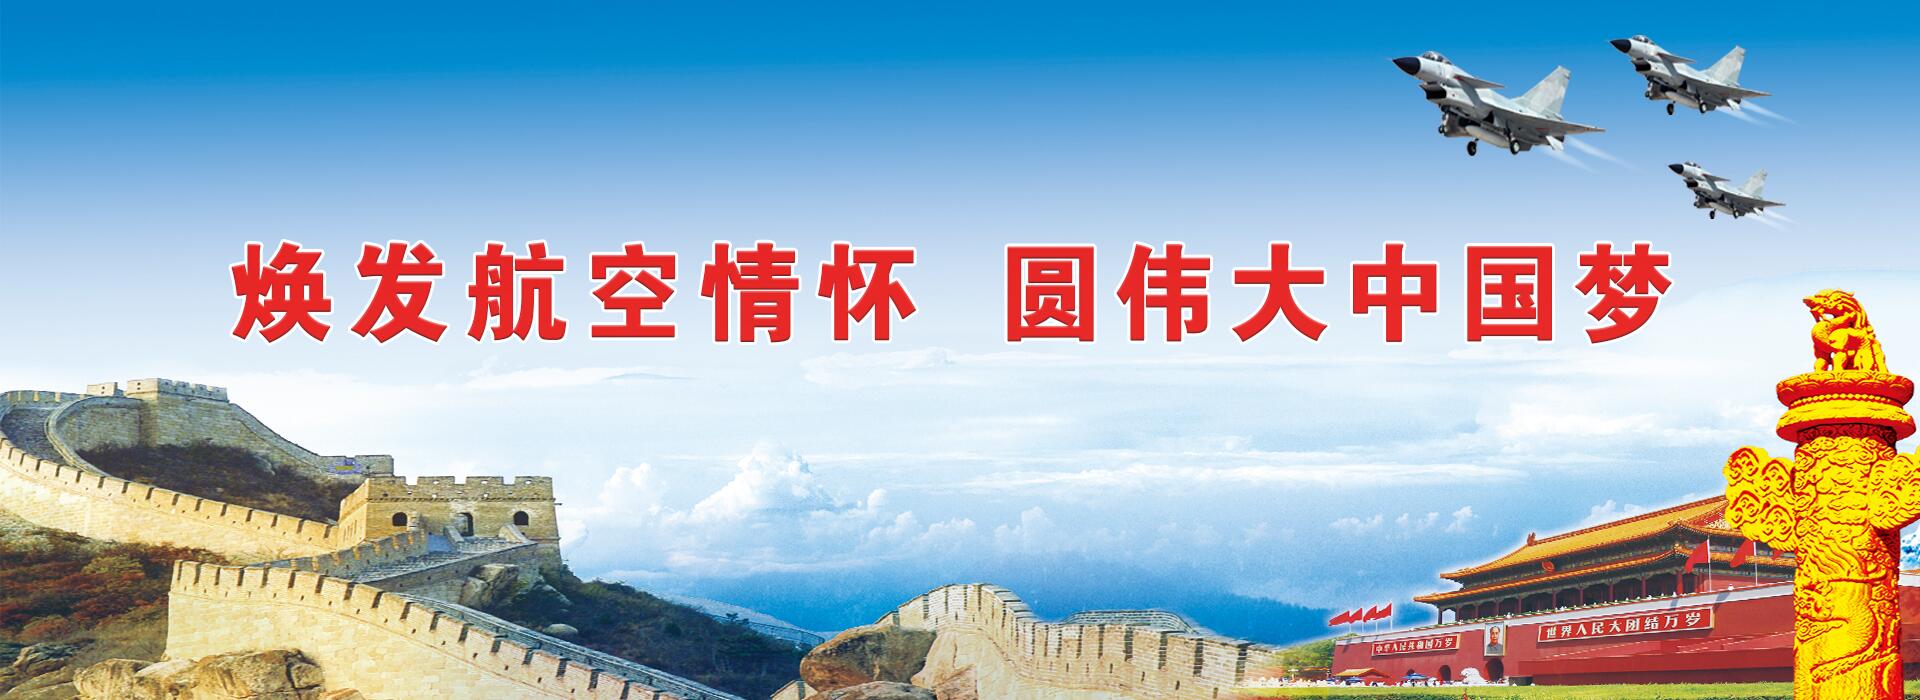 关于当前产品1211宝马娱乐·(中国)官方网站的成功案例等相关图片